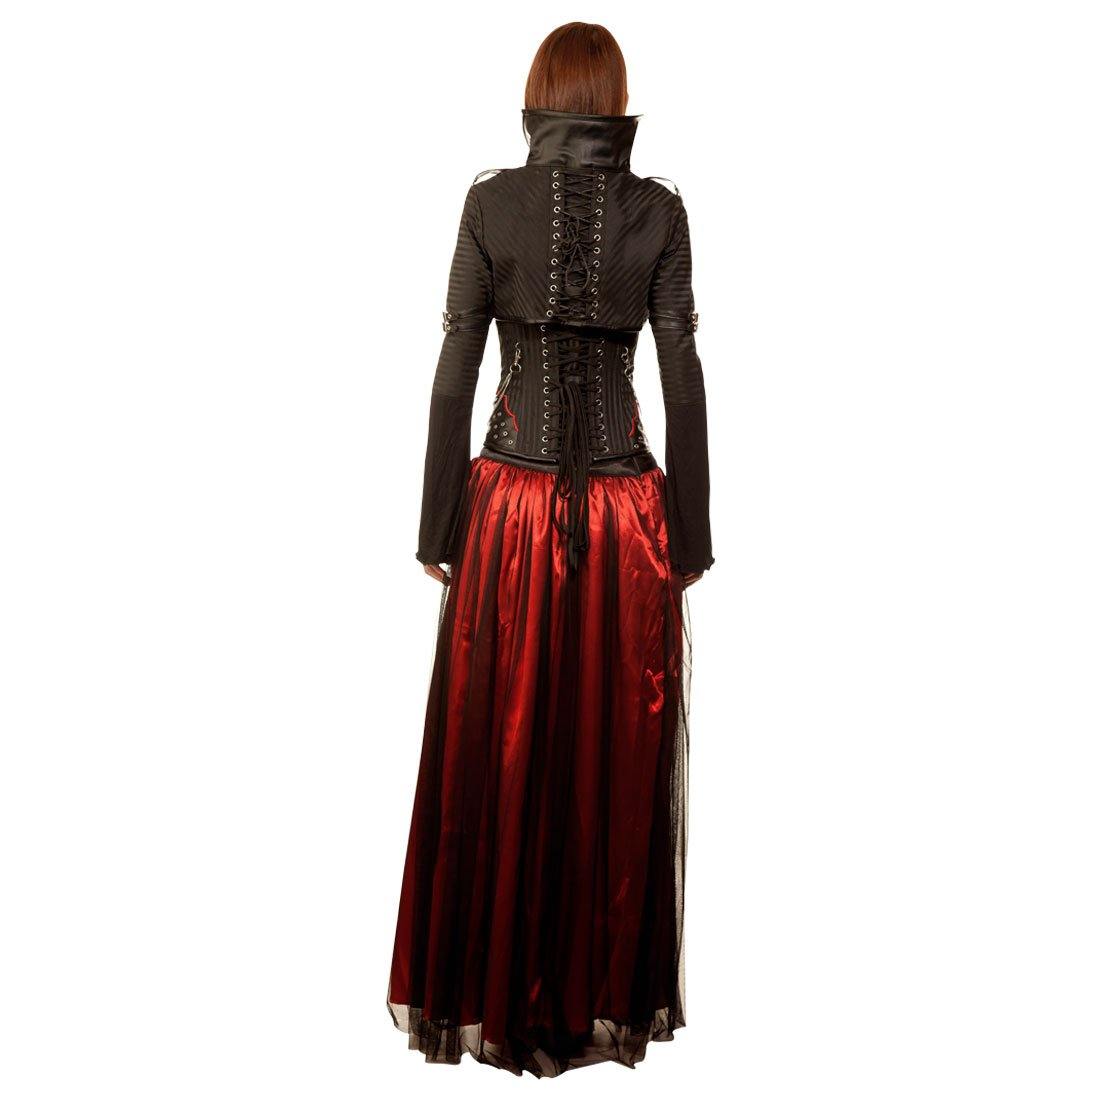 Saadaat Gothic Couture Authentic Steel Boned Underbust Corset Dress - Corset Revolution